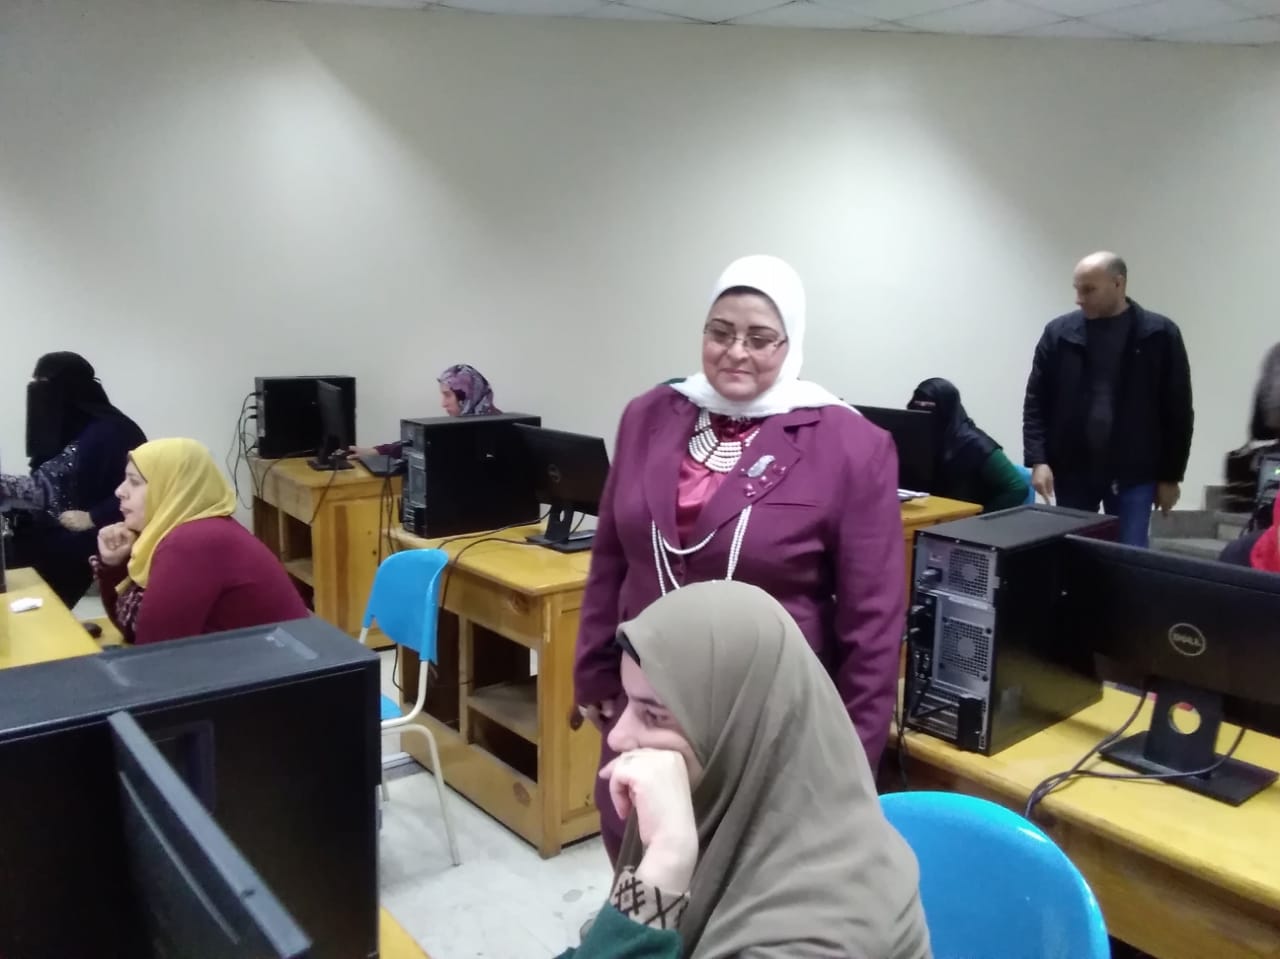  بالصور: لليوم الثاني على التوالي .. استمرار الاختبارات الإلكترونية للمرشحين للوظائف المؤقتة بتعليم كفر الشيخ